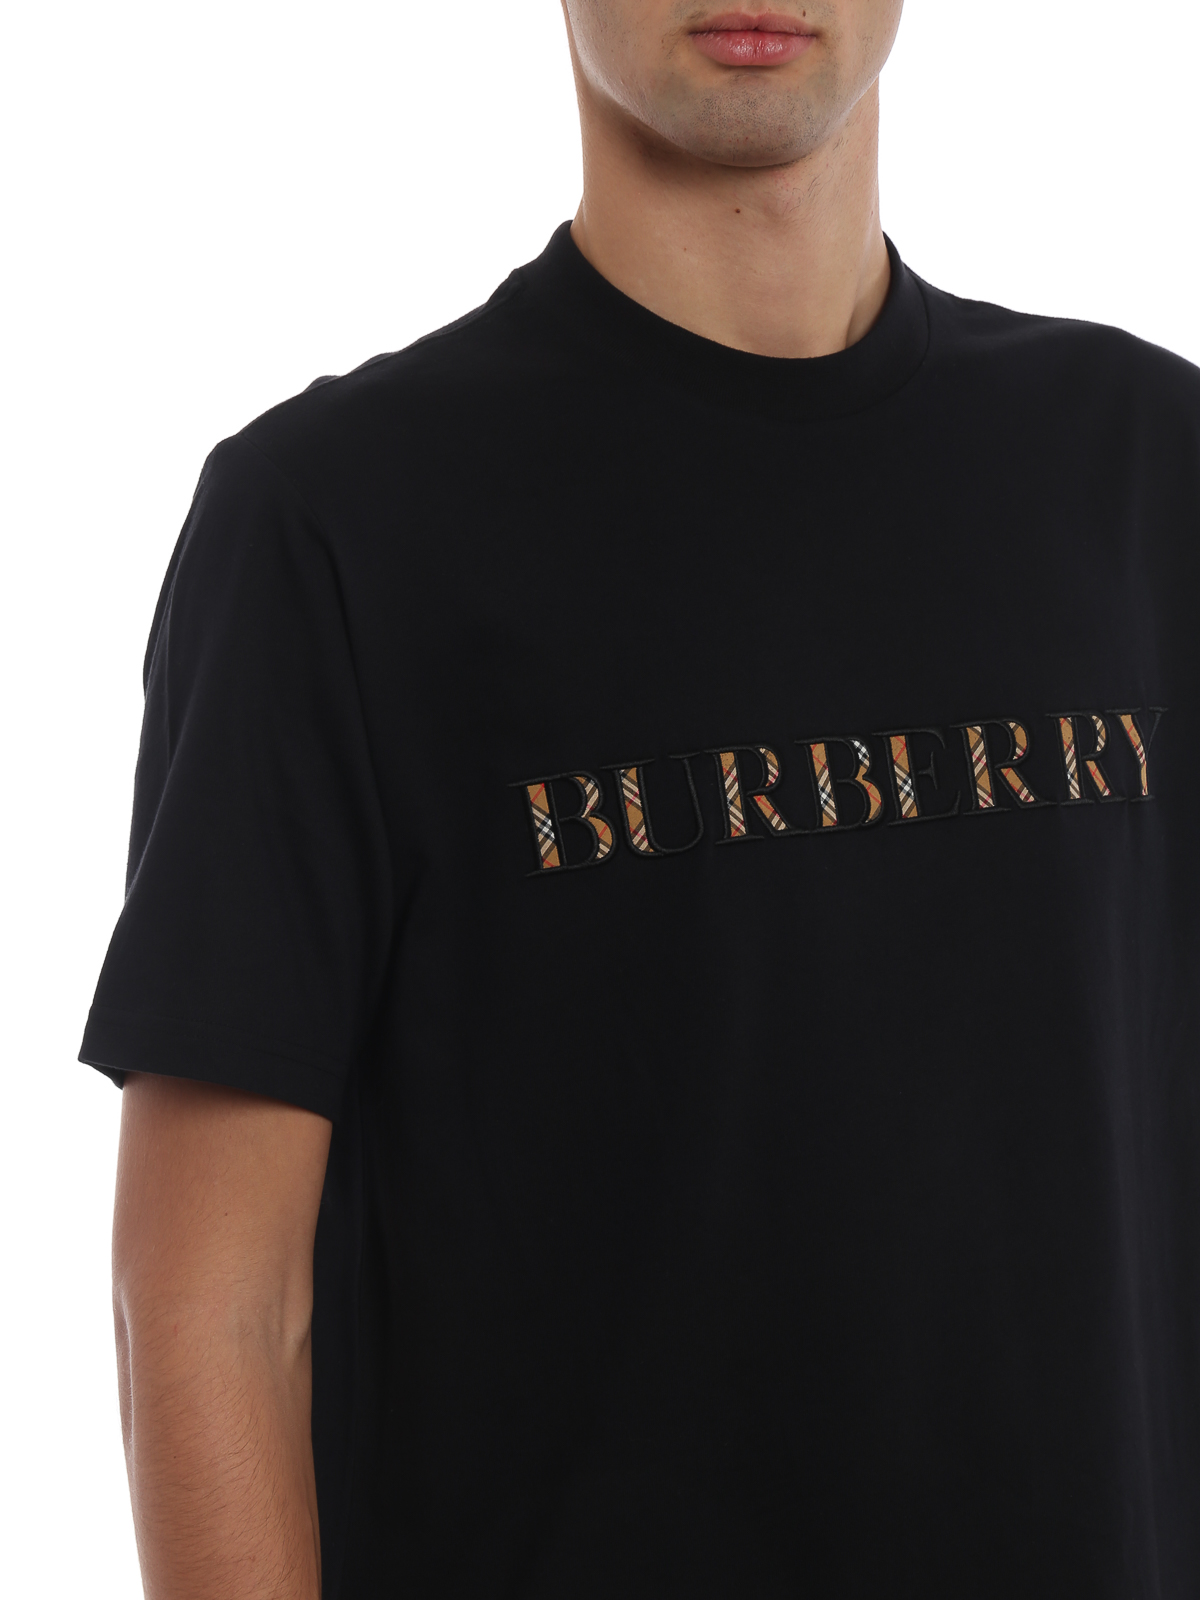 burberry t shirt womens online